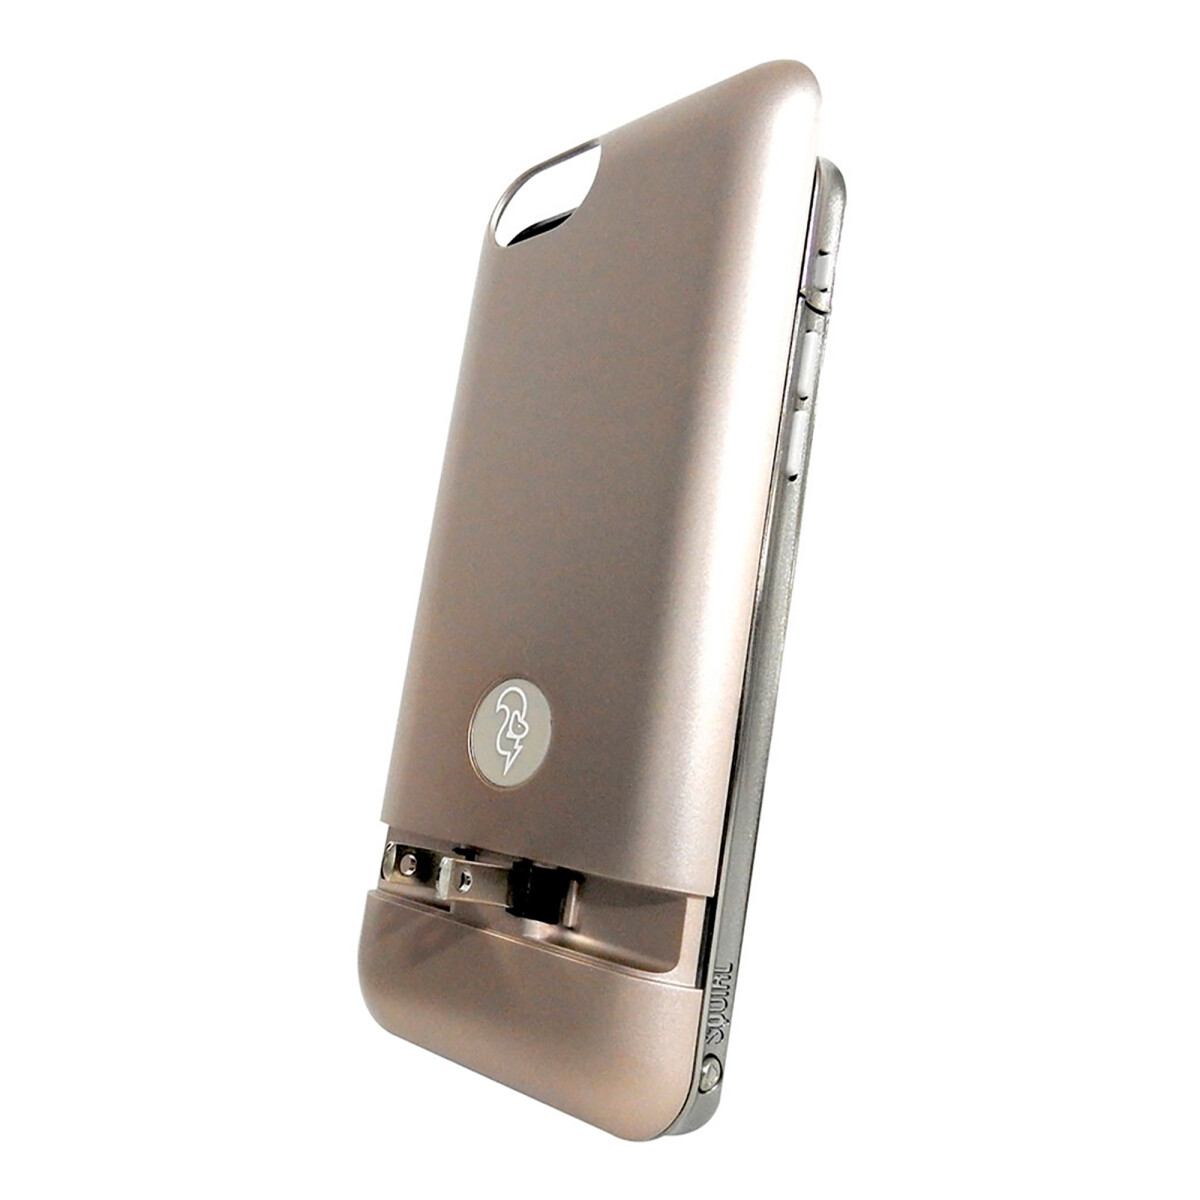 Squirl - Estuche con Batería para Iphone 6 / 6S - Protección y Potencia. Li-ion 2300 Mah. - 001 